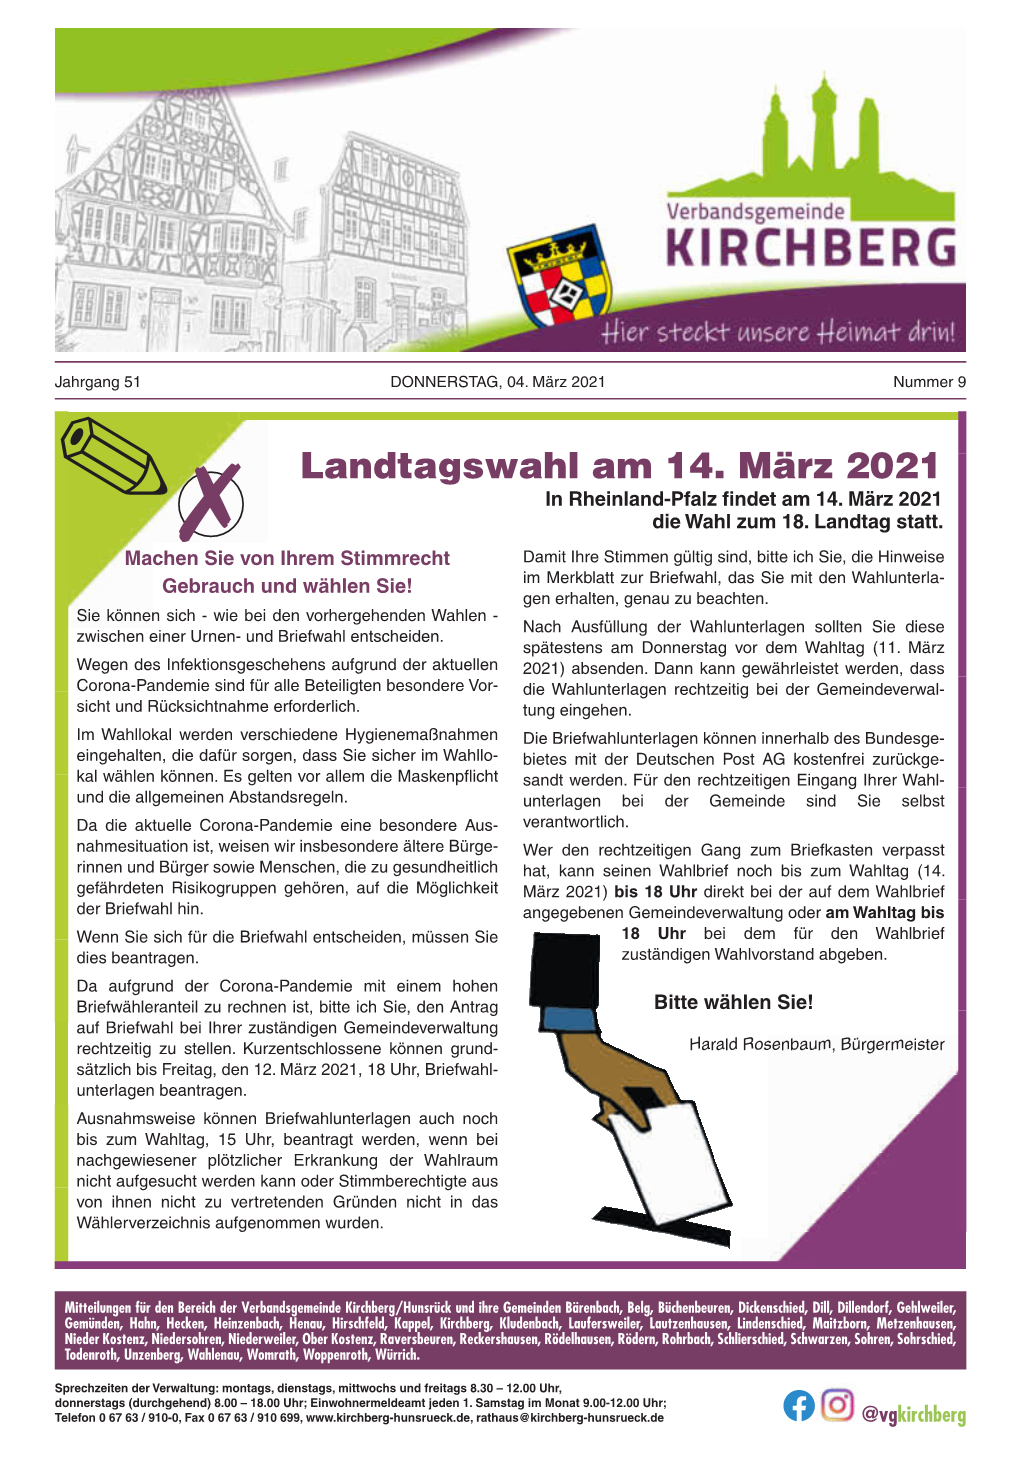 Landtagswahl Am 14. März 2021 in Rheinland-Pfalz Findet Am 14